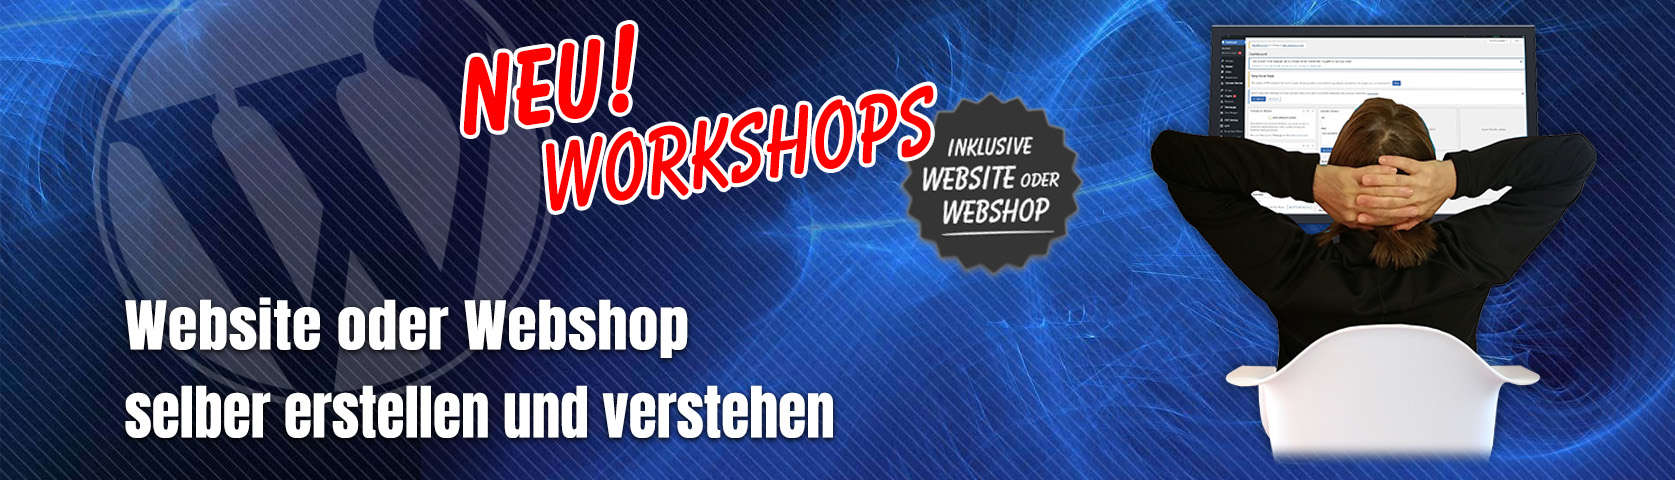 Workshops für WordPress oder WooCommerce